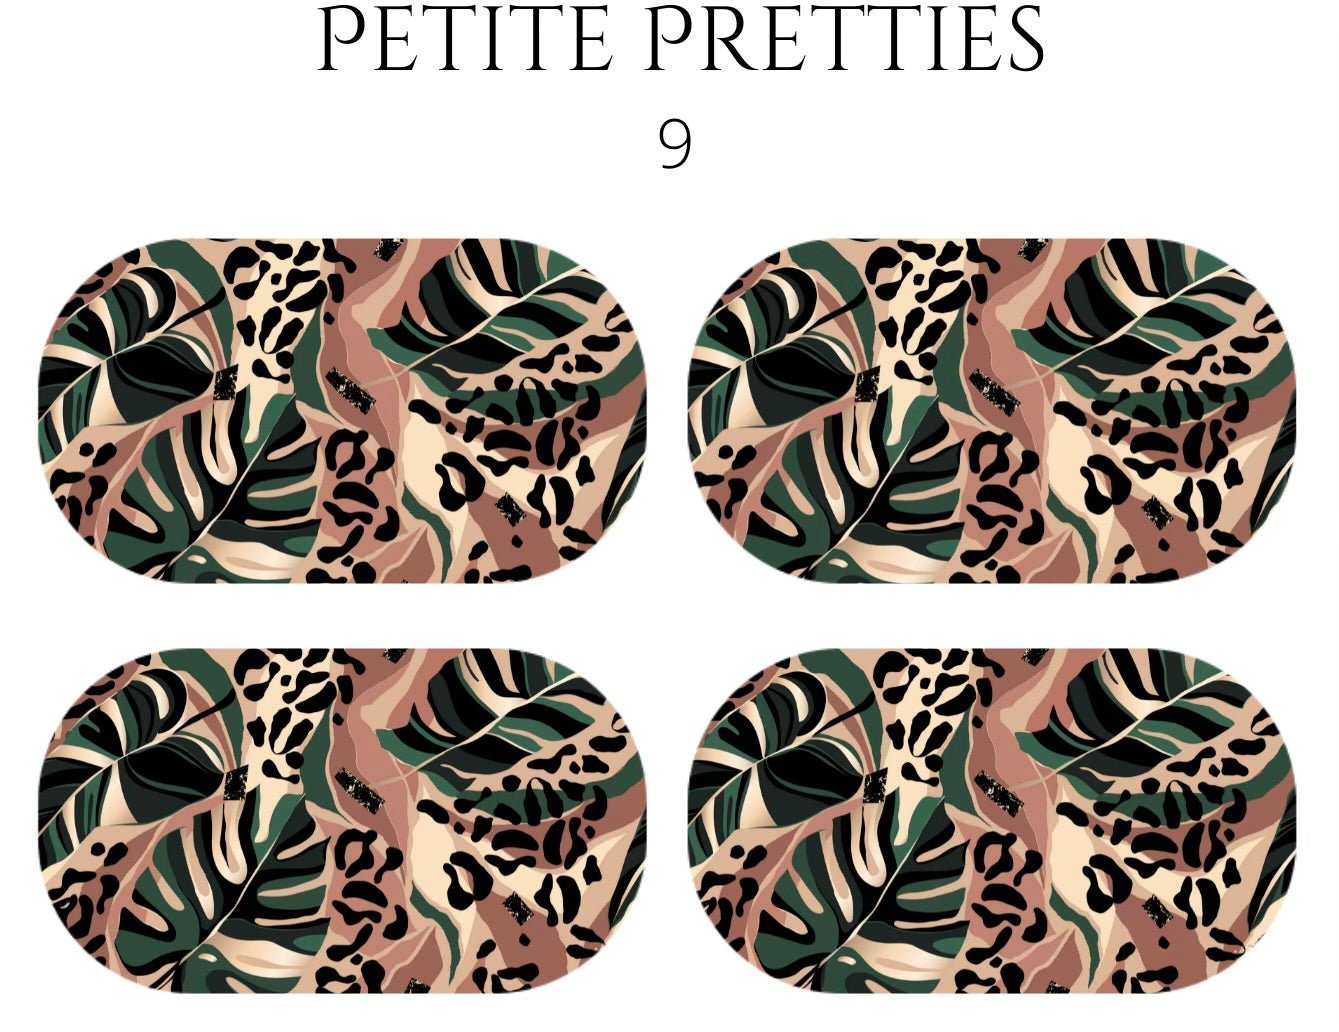 Petite Pretties - 9 - Pampered Pretties